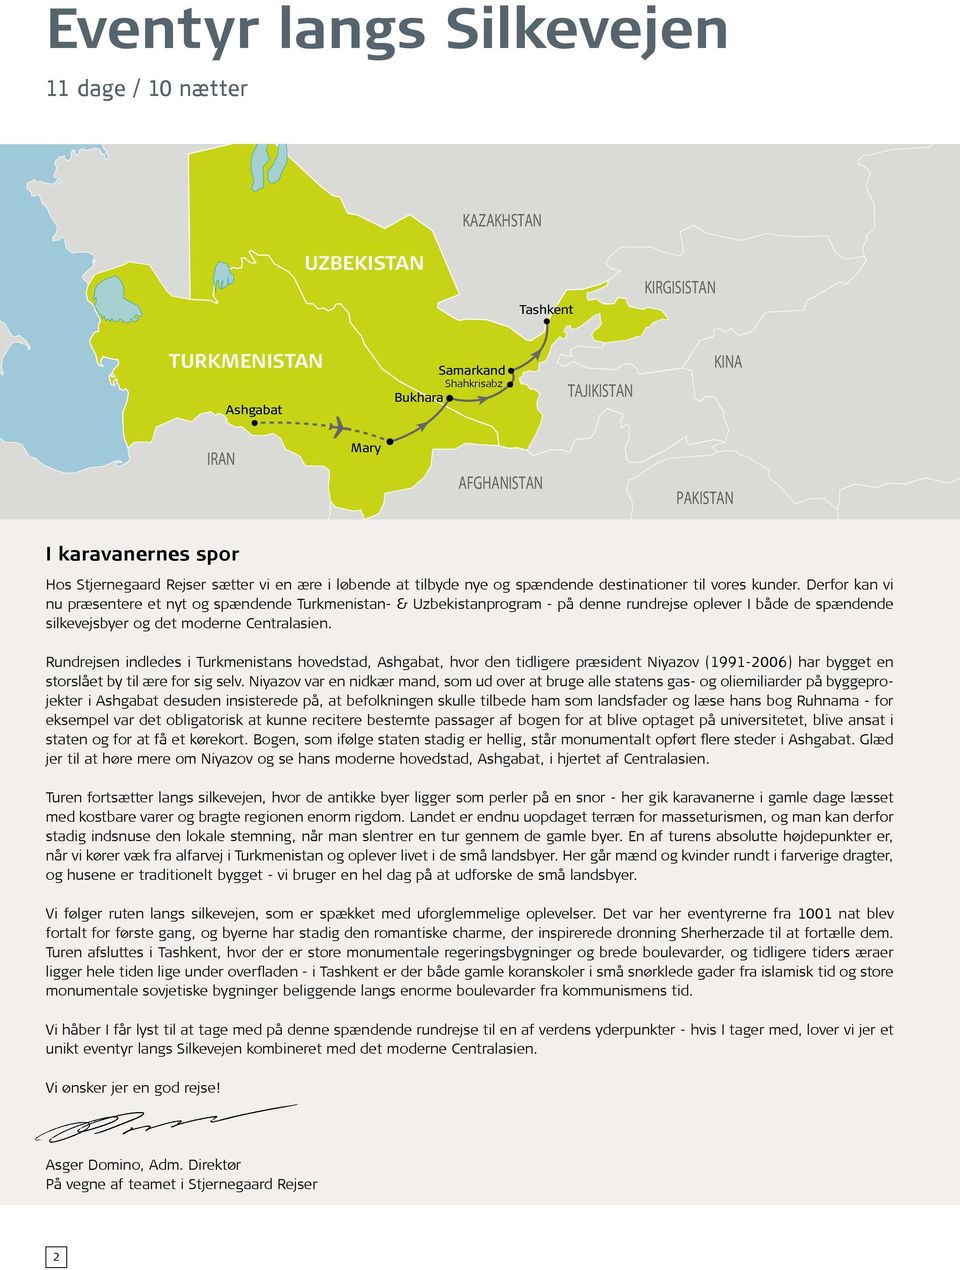 Derfor kan vi nu præsentere et nyt og spændende Turkmenistan- & Uzbekistanprogram - på denne rundrejse oplever I både de spændende silkevejsbyer og det moderne Centralasien.